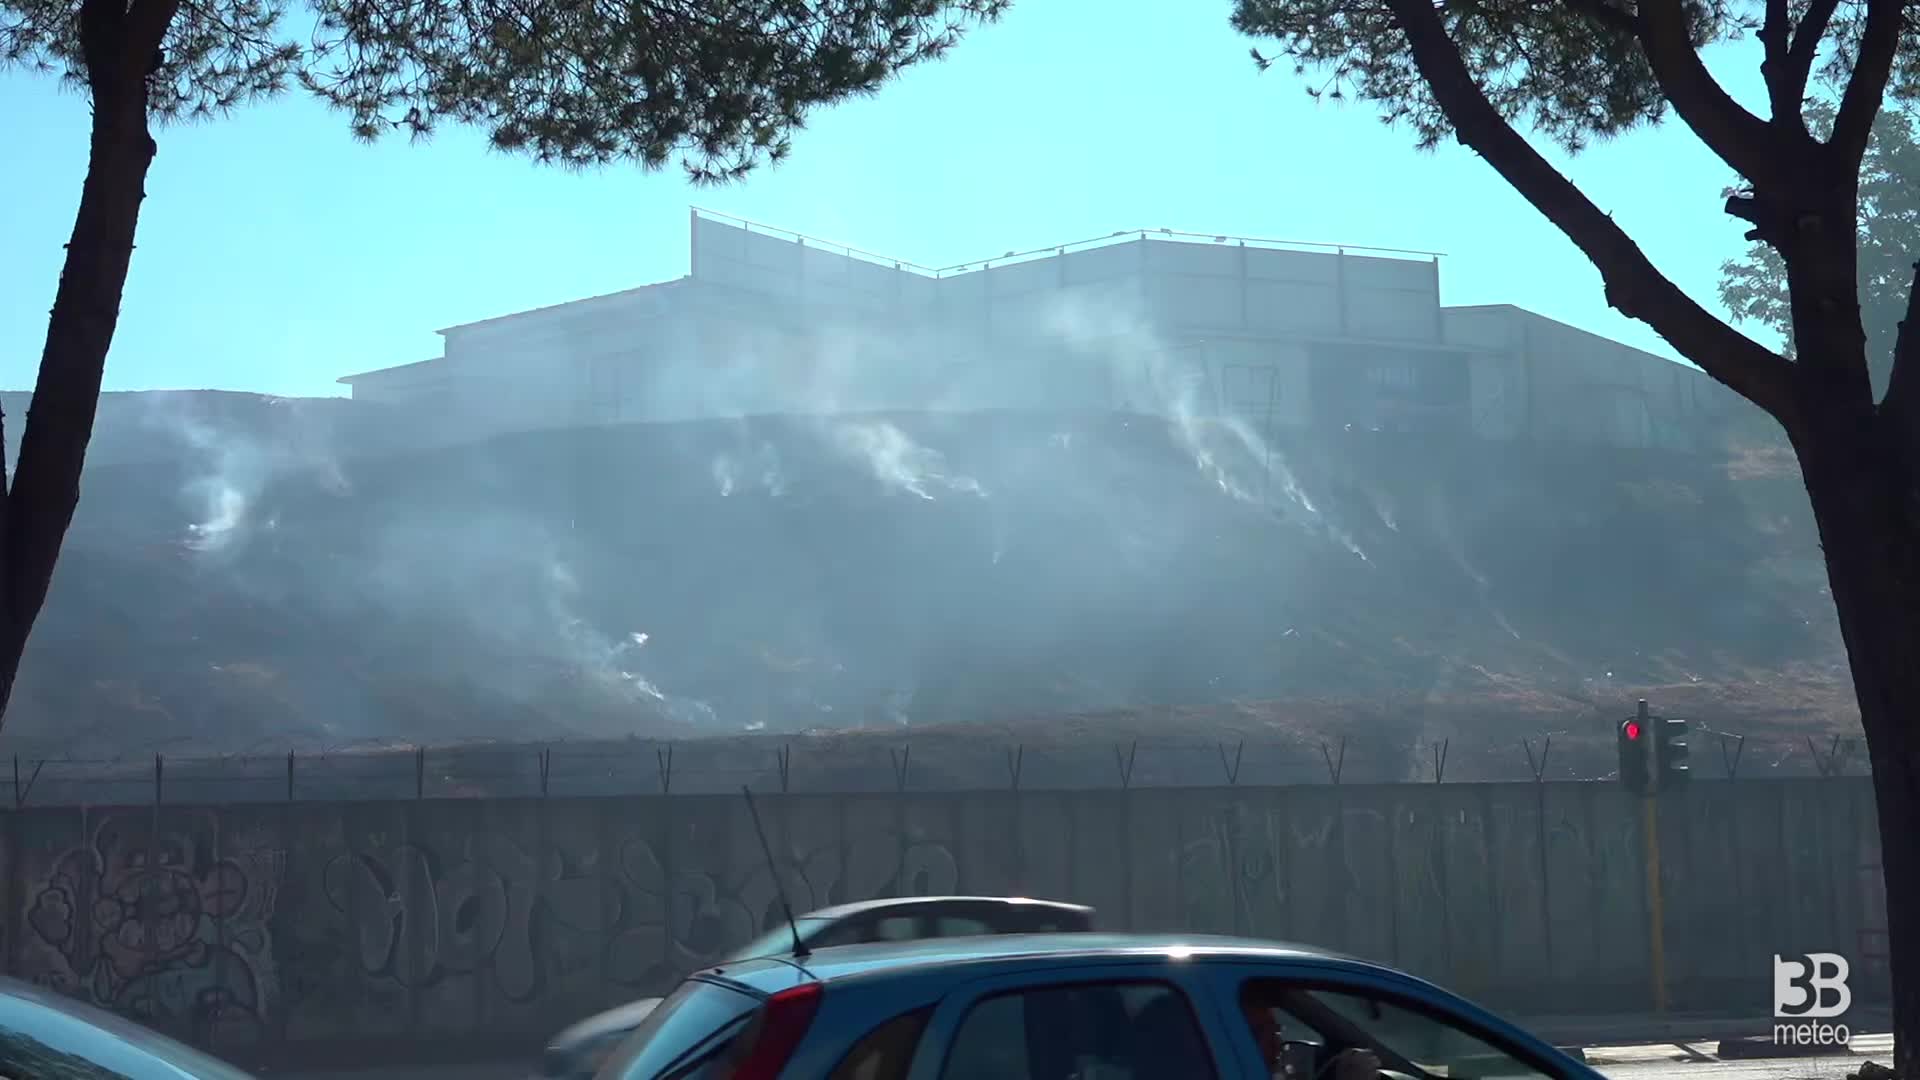 Incendio agli studi di Cinecitt?: distrutta scenografia